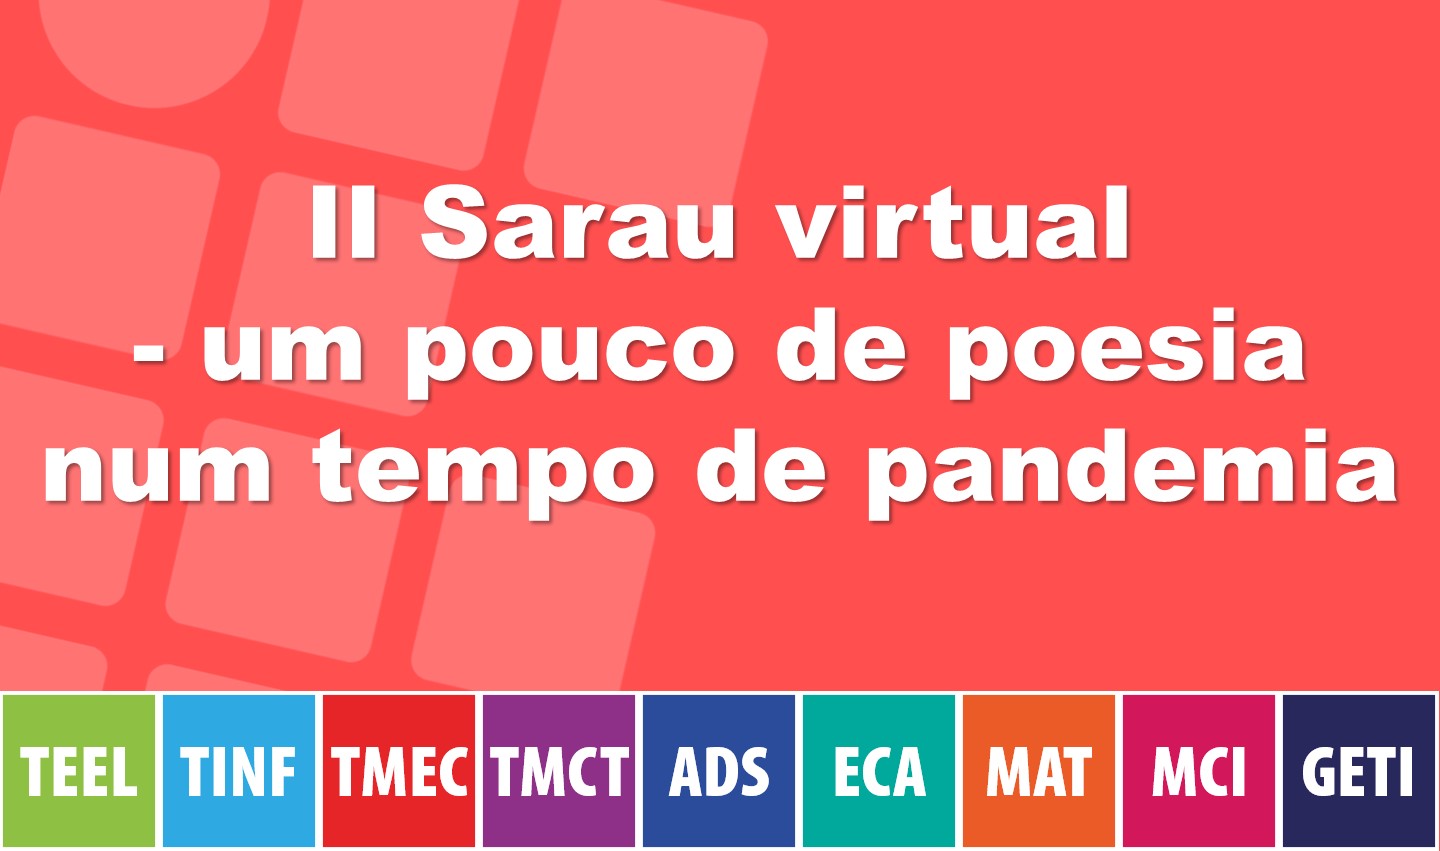 2º Sarau virtual - um pouco de poesia num tempo de pandemia - 21/05, às 17h